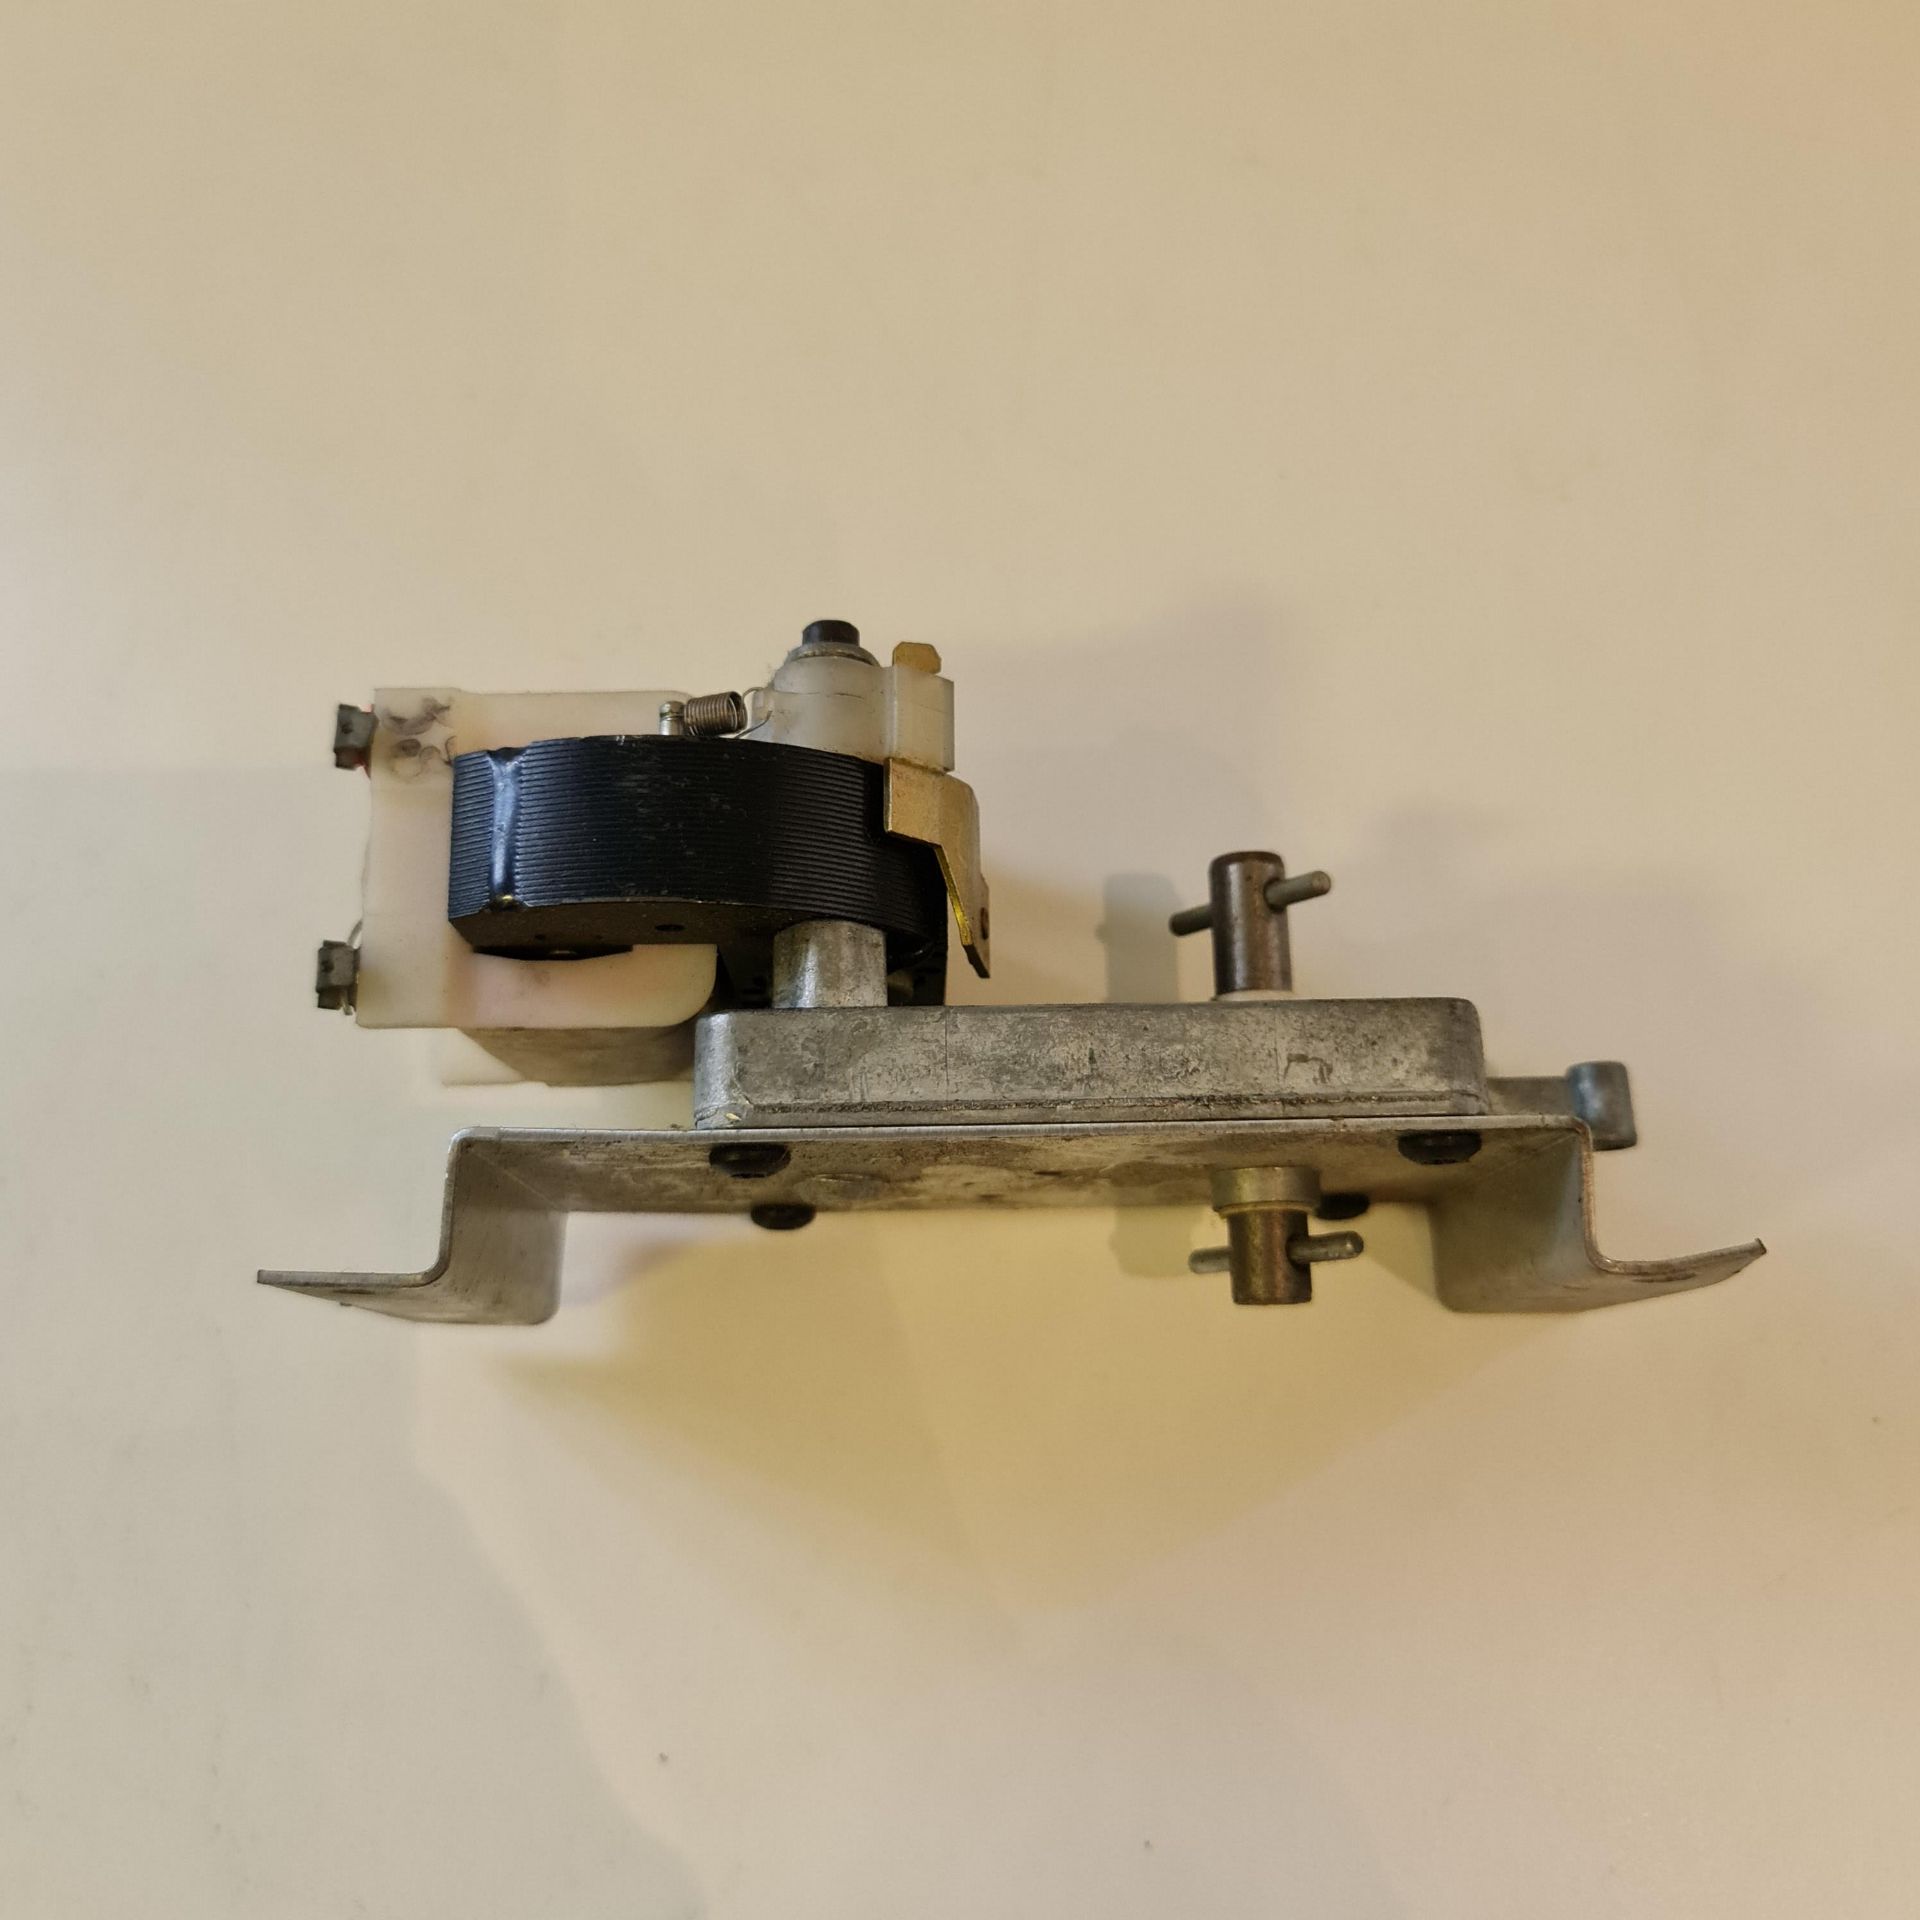 Merkle Korff Vending Machine Gear Motor P/N 388637 Second Hand RRP £100 - Image 5 of 6